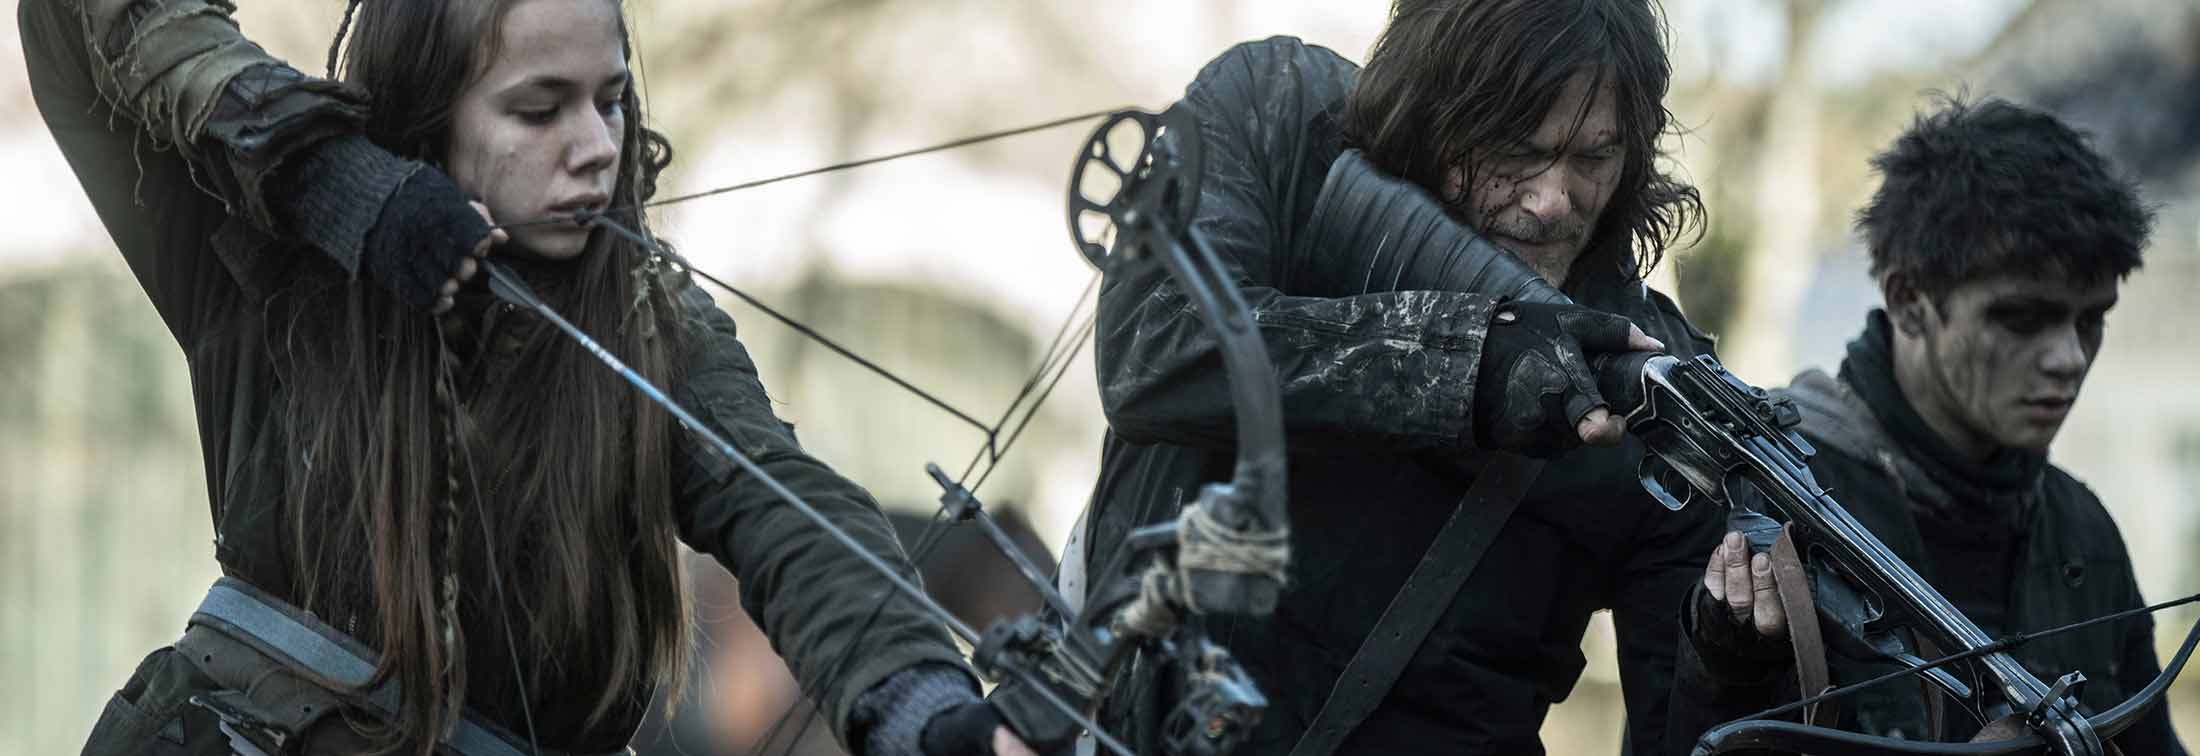 The Walking Dead: Daryl Dixon - Season 1 - Hope is not lost